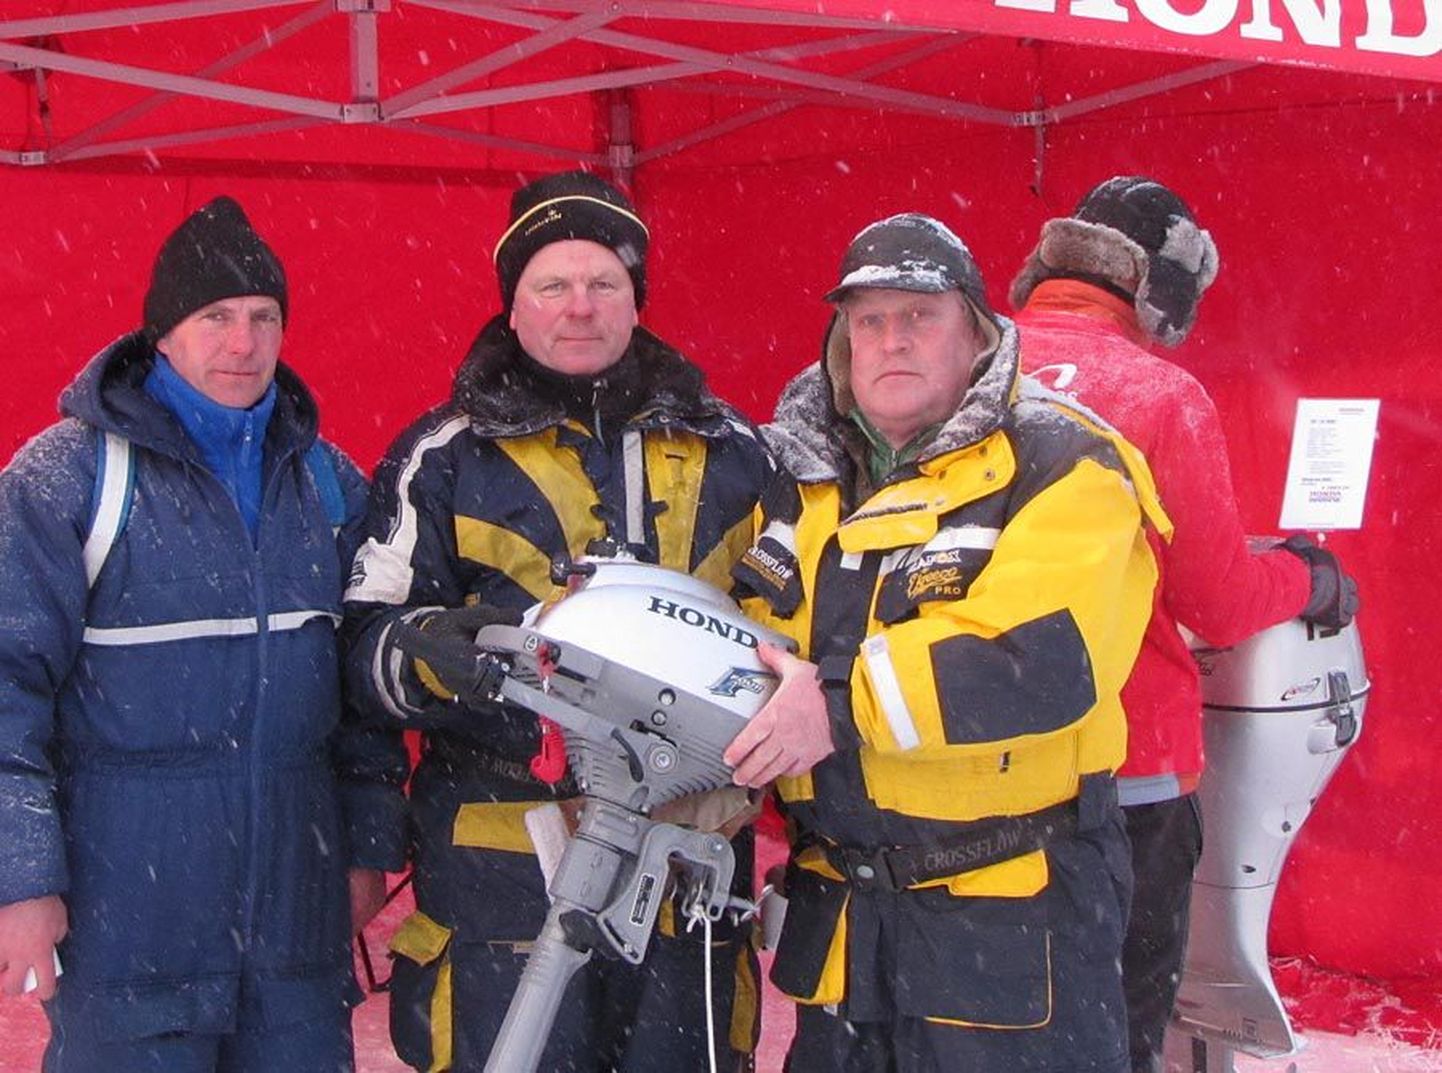 MTÜ Kalastusklubi Suure-Jaani Säga võistkond Lembit Sepp (vasakult), Heino Johanson ja Edvin Luum. Pildilt puudub Ahti Ots.